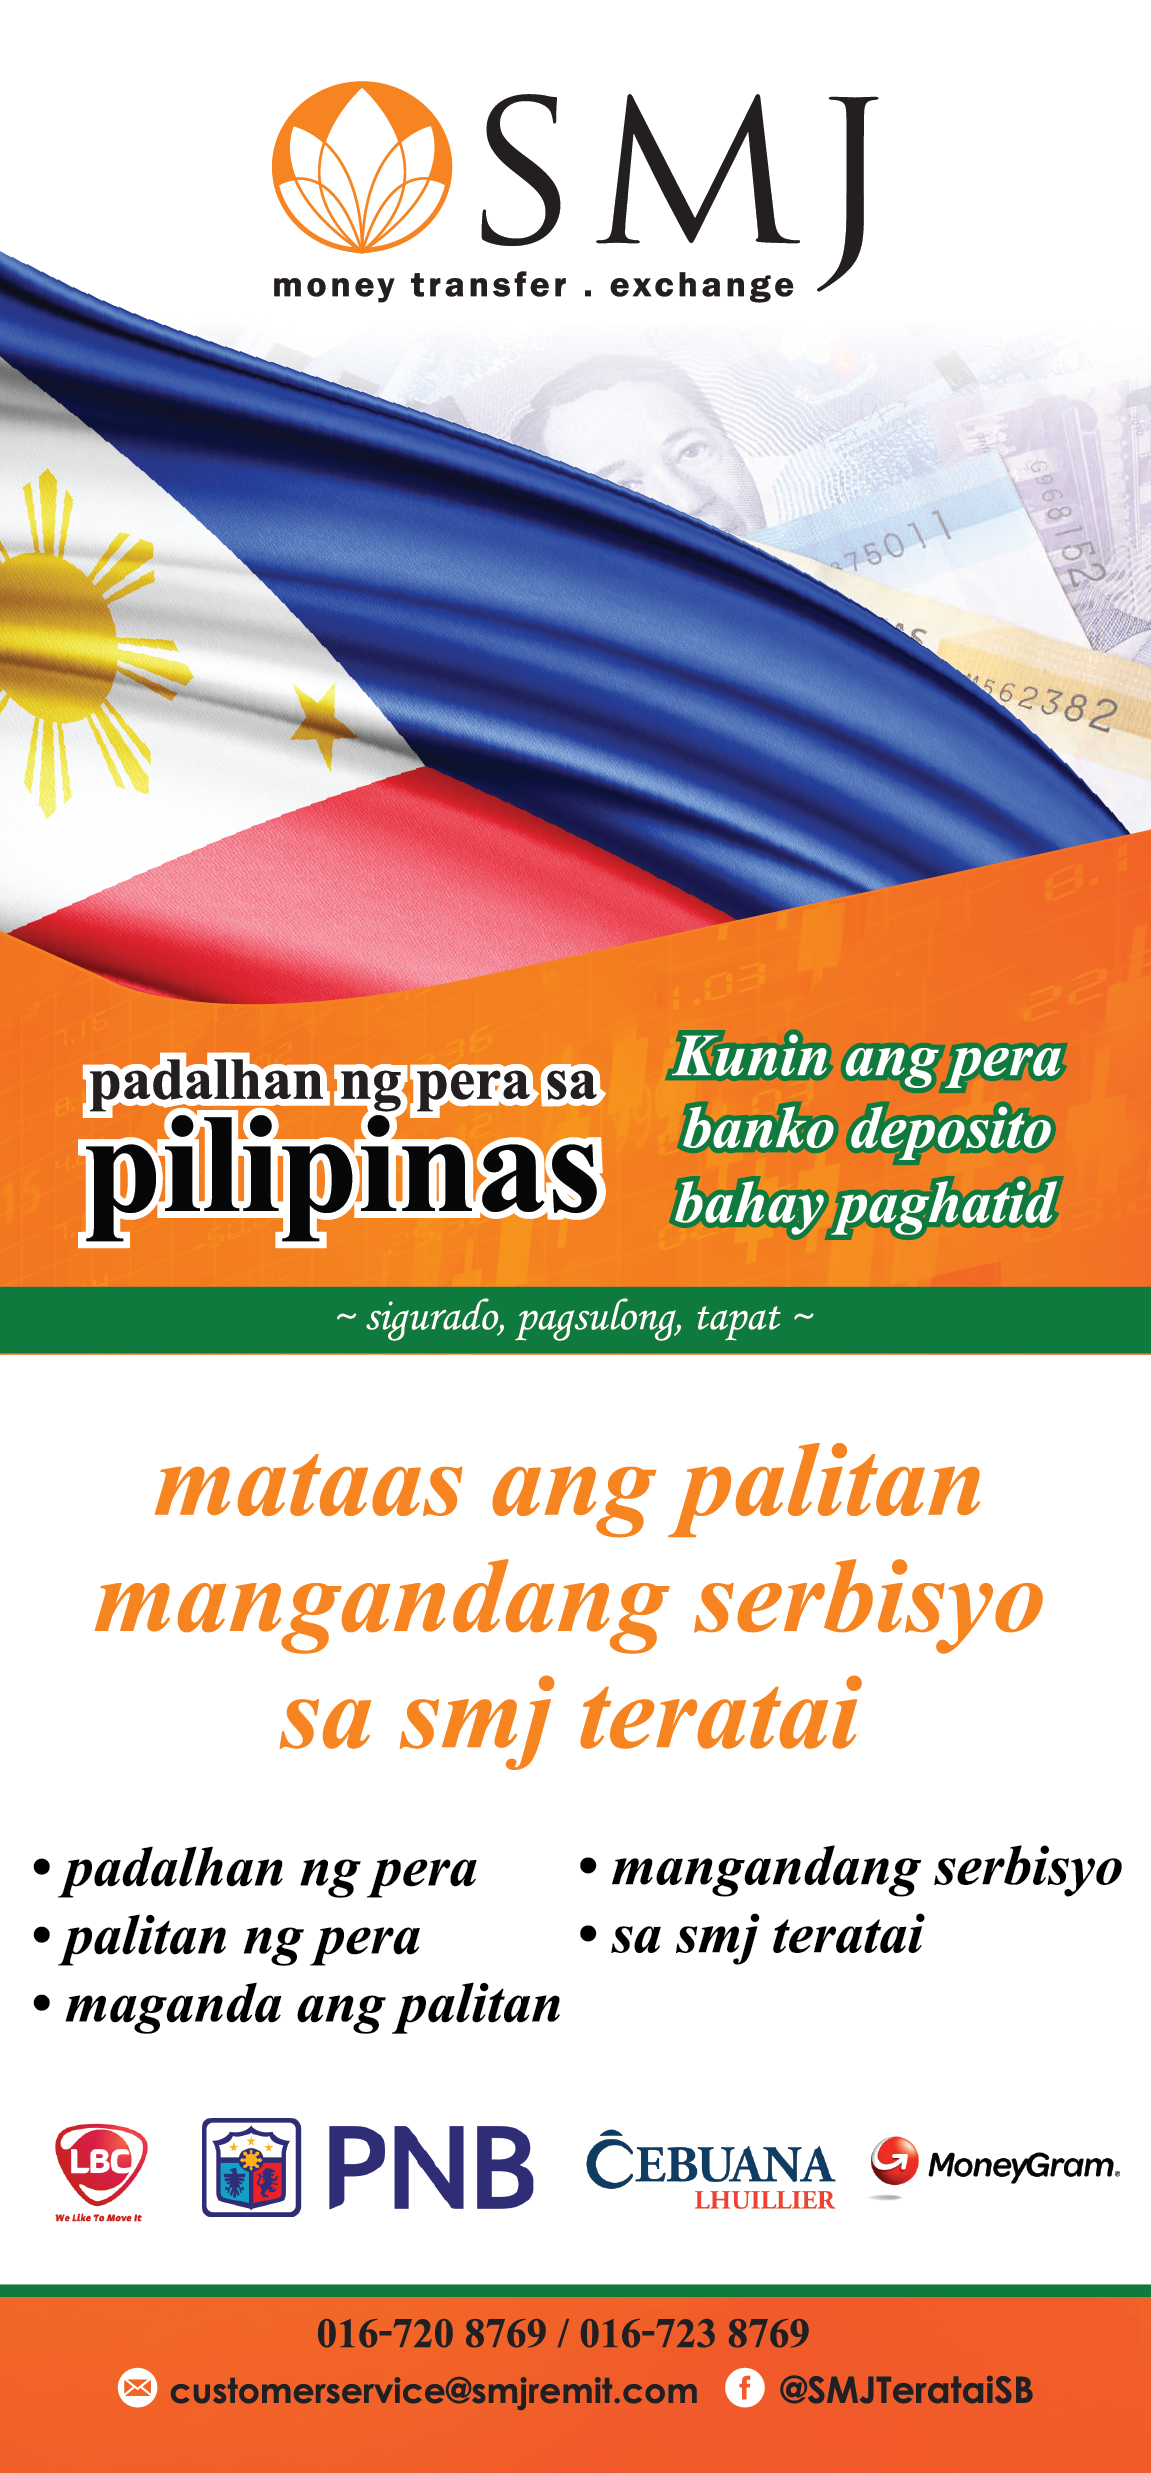 Send Money to Philippine